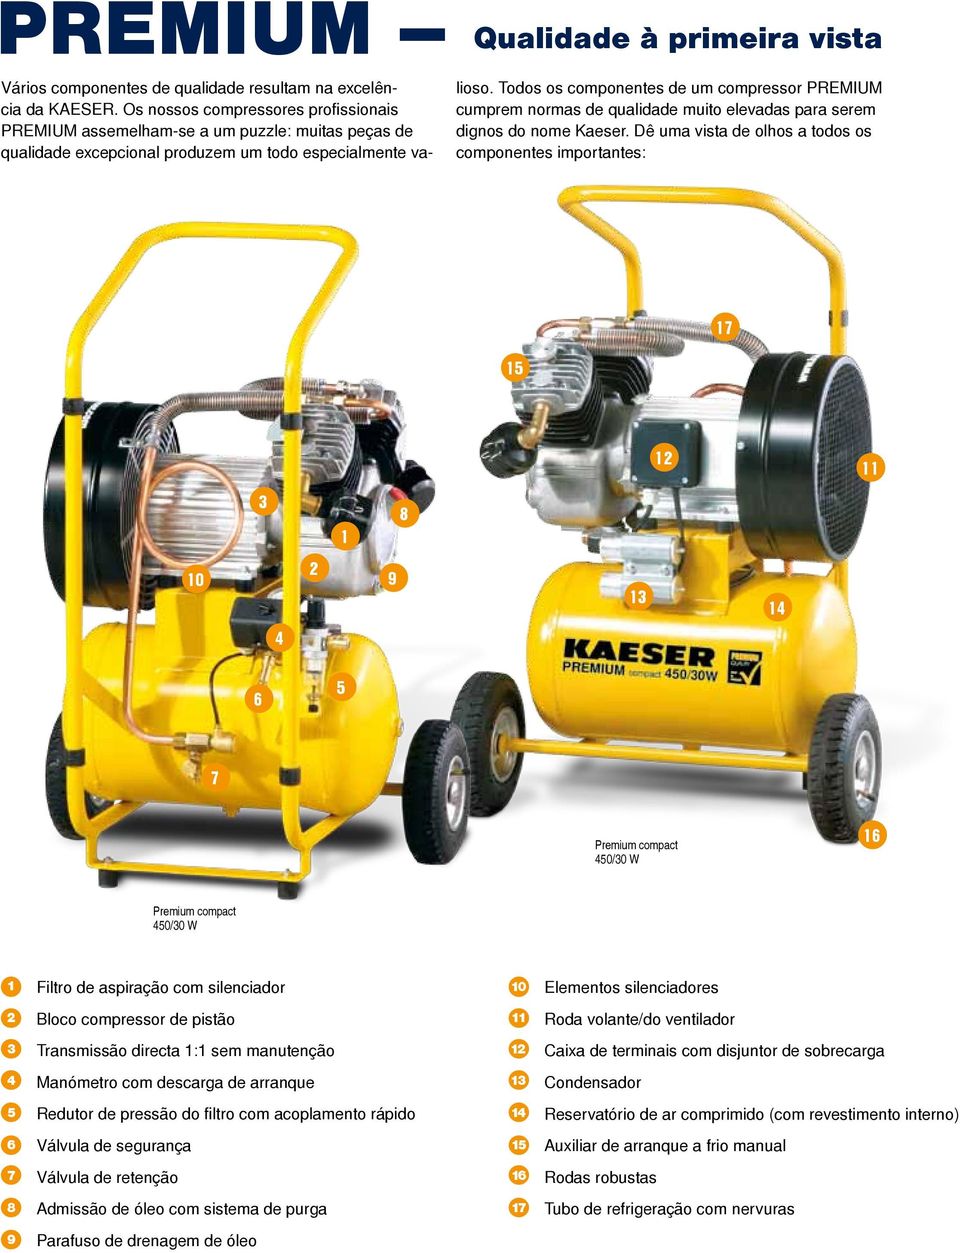 Todos os componentes de um compressor PREMIUM cumprem normas de qualidade muito elevadas para serem dignos do nome Kaeser.